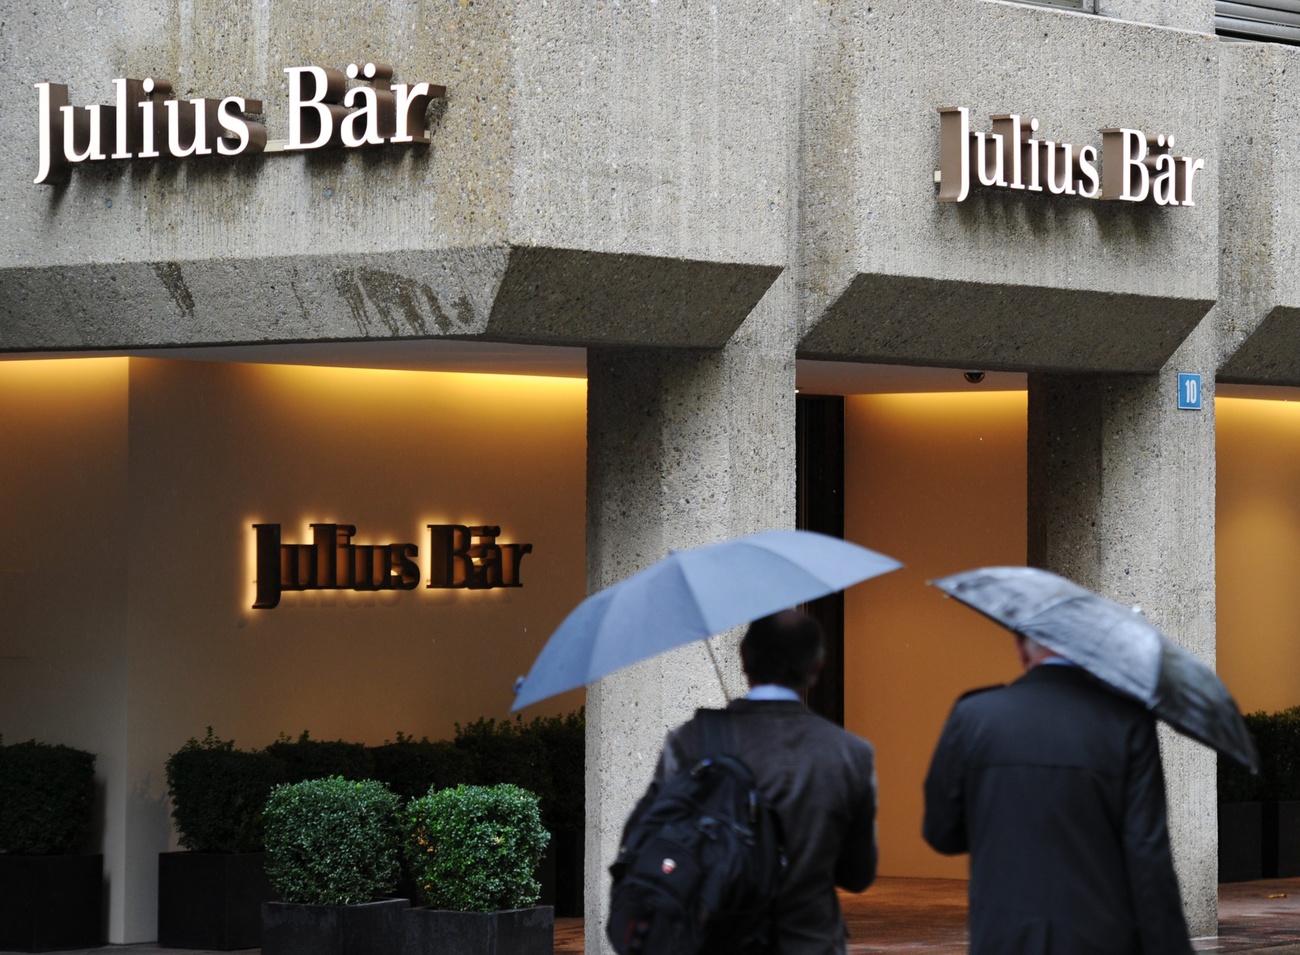 Julius Baer bank in Zurich